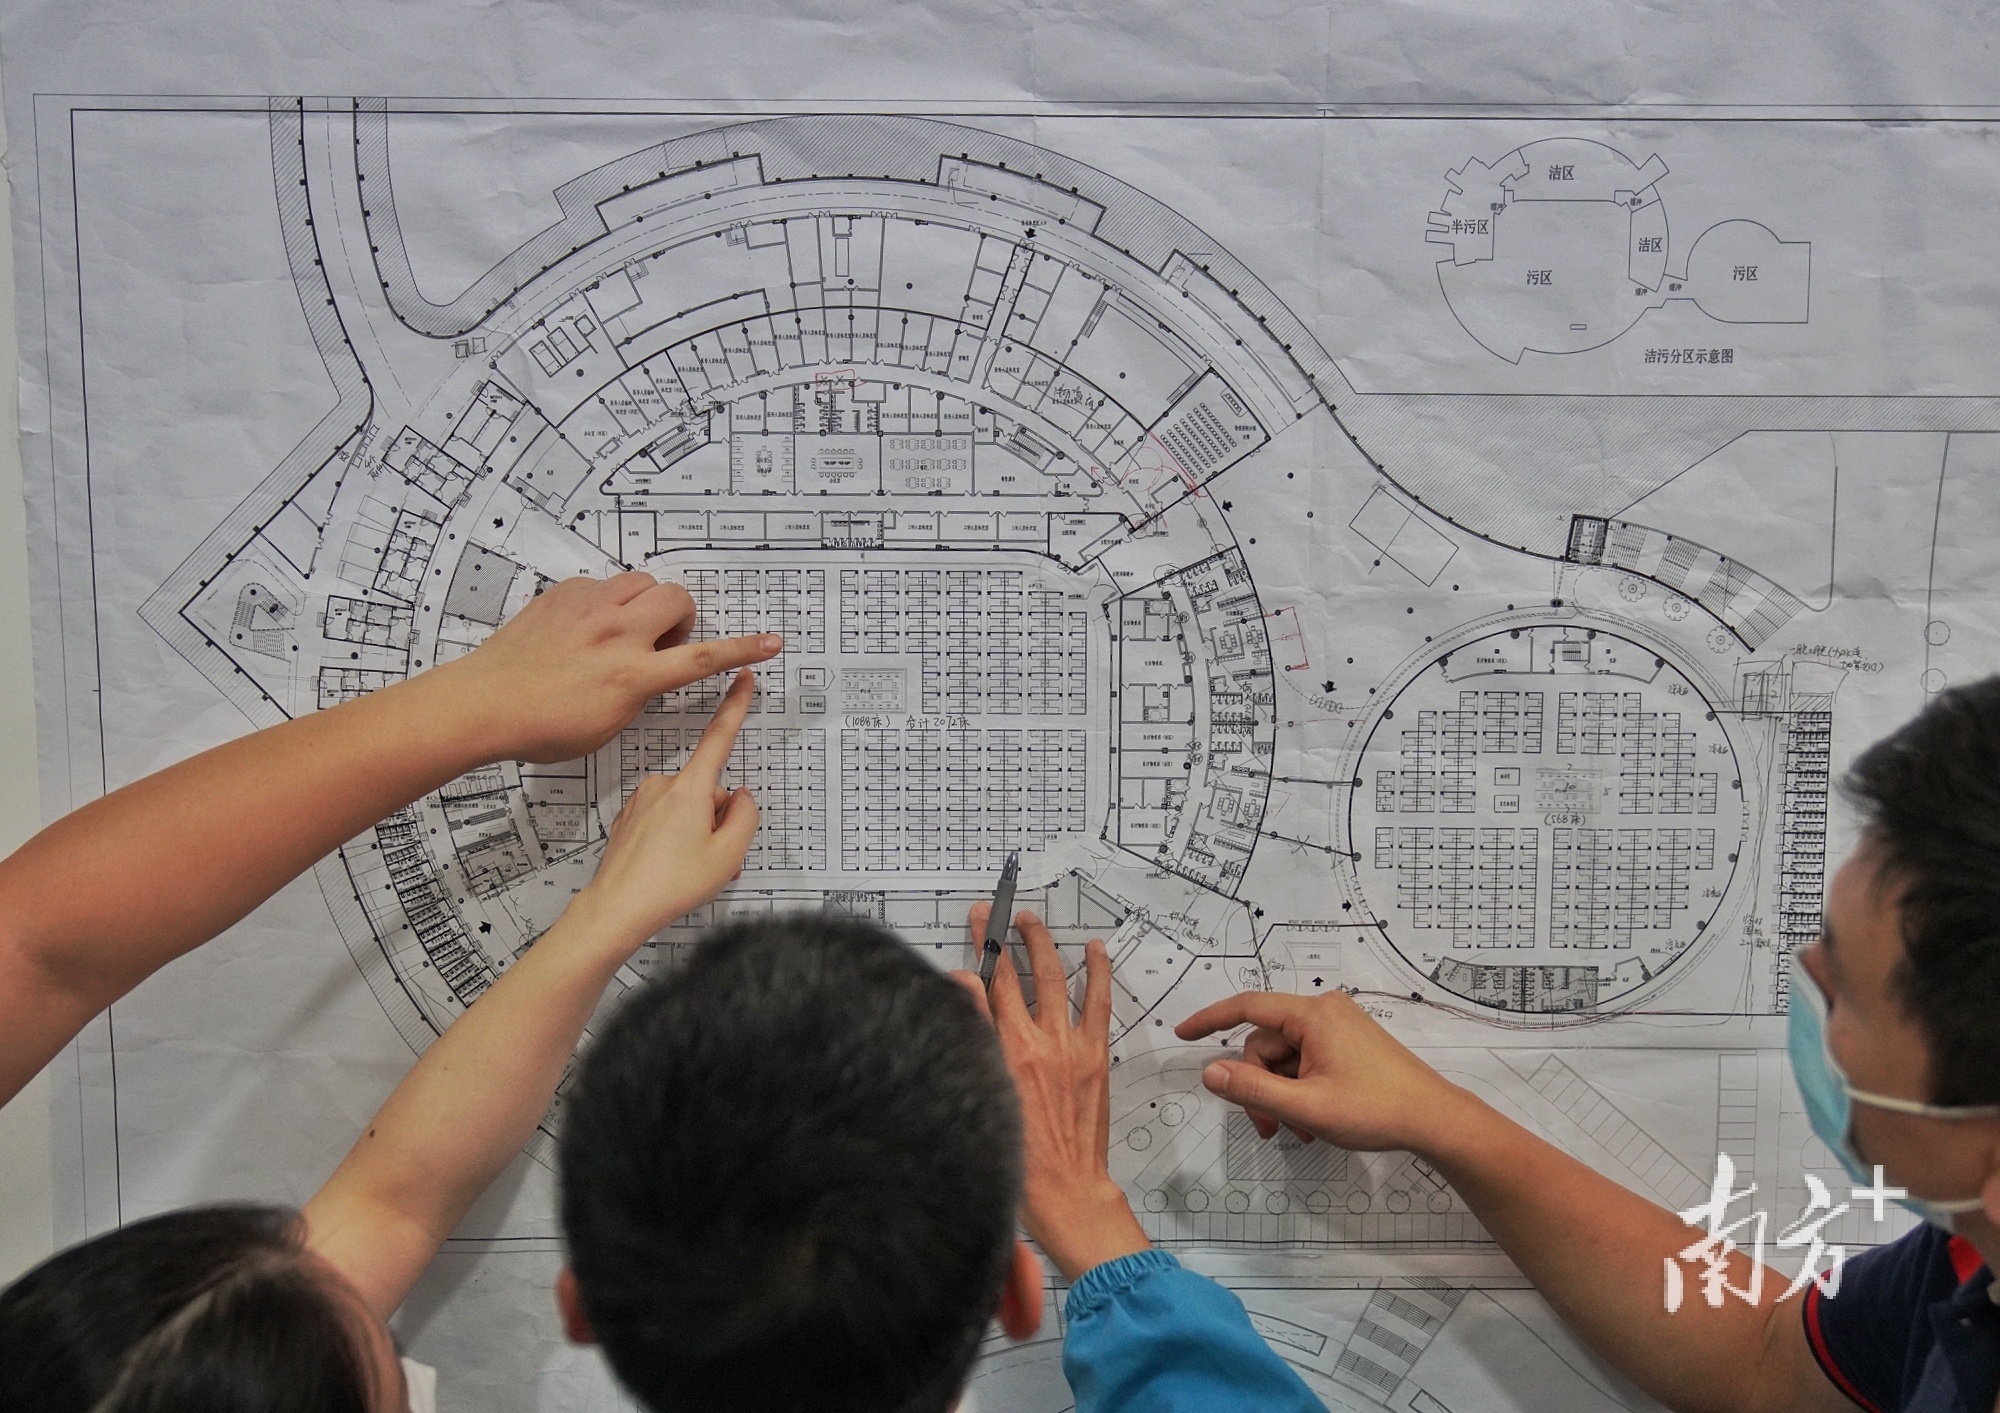 广州一处应急转运点项目的施工图。石磊 摄